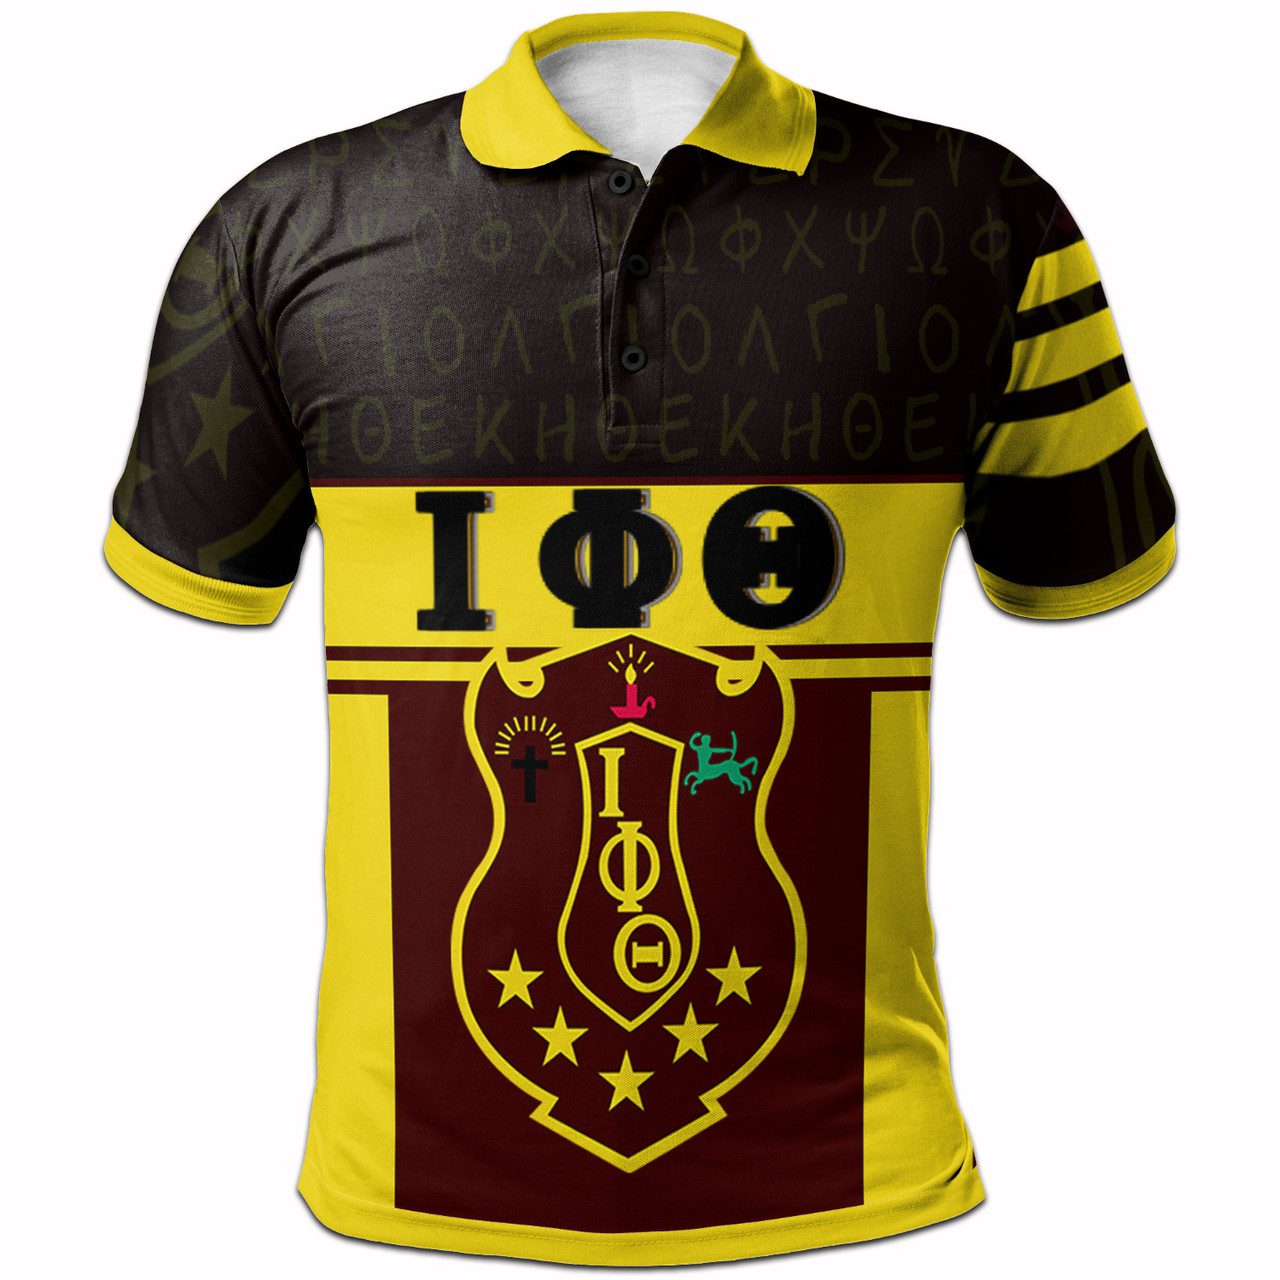 Iota Phi Theta Polo Shirt – Fraternity Heritage Polo Shirt